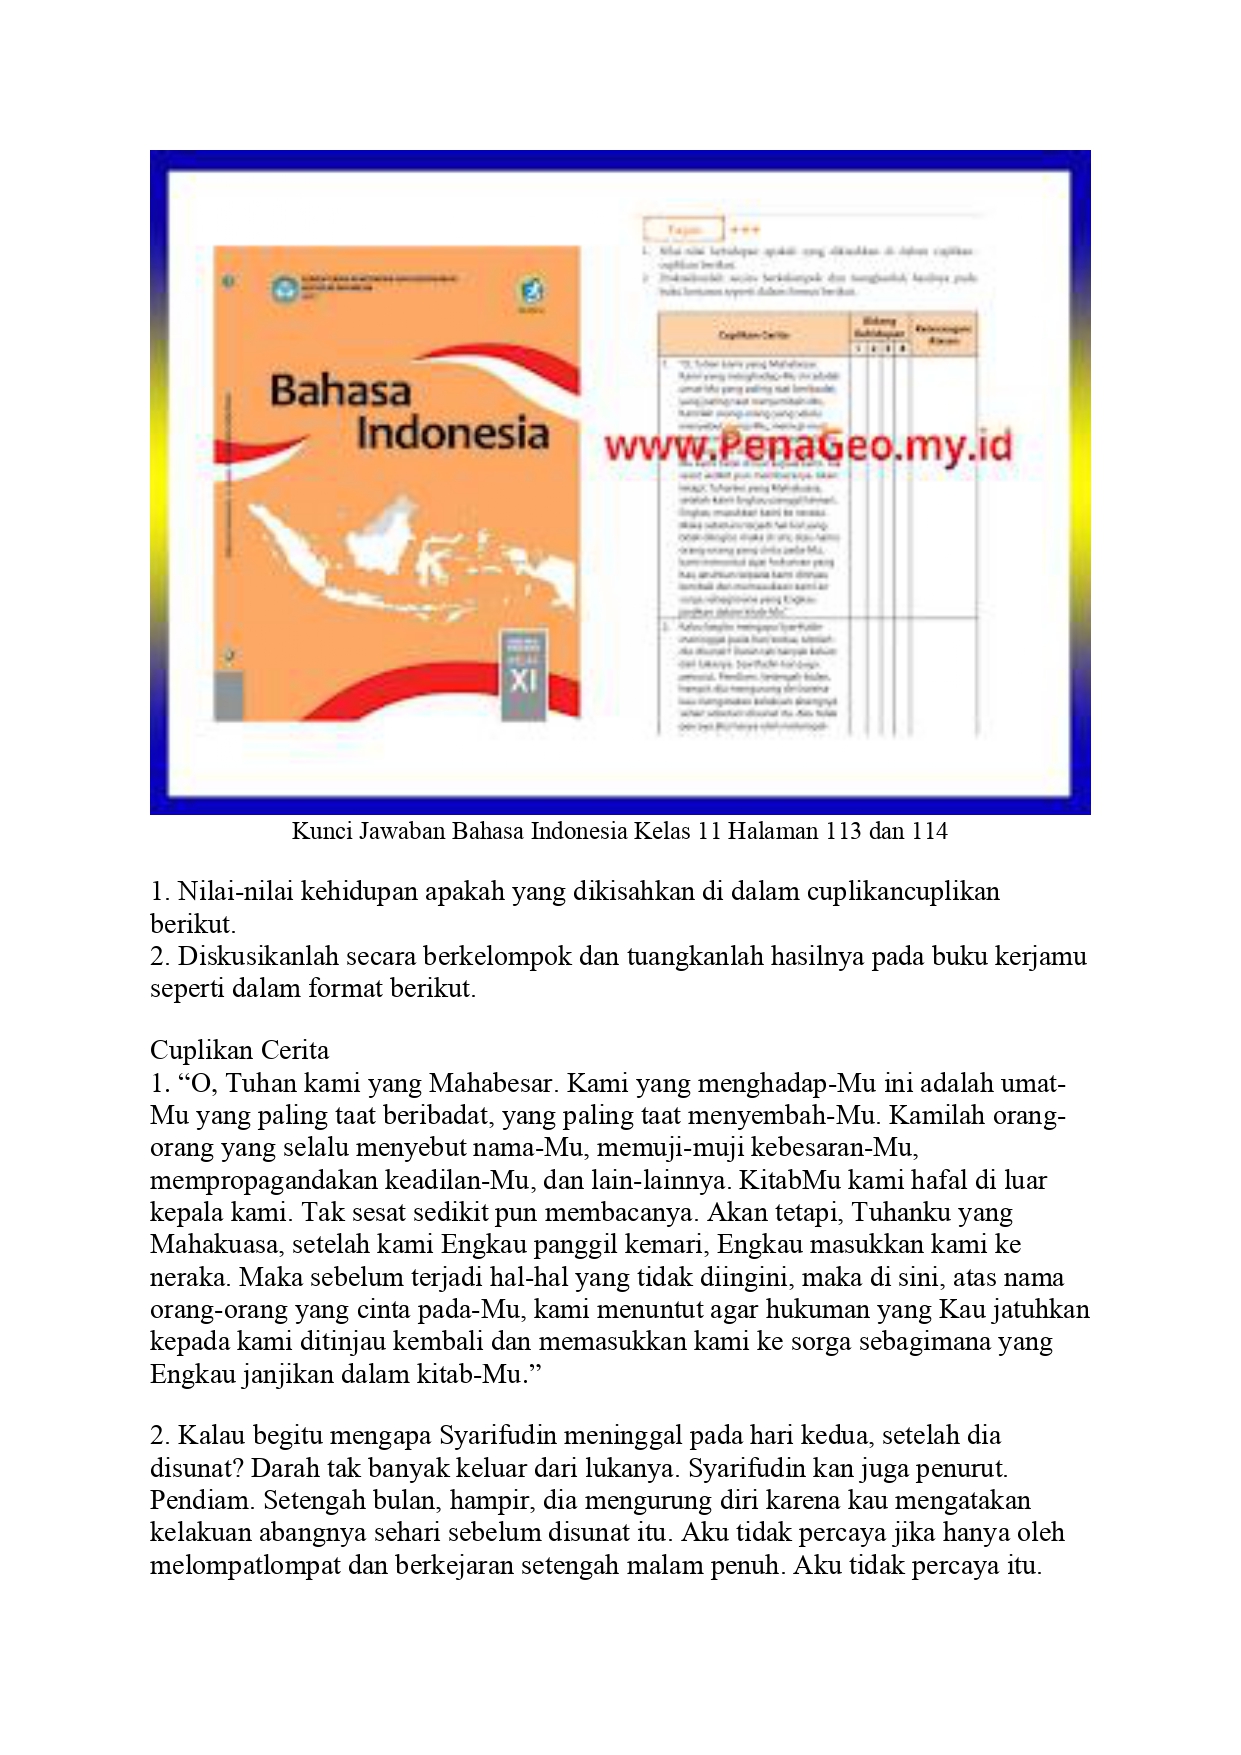 Kunci Jawaban Bahasa Indonesia Kelas 11 Halaman 113 dan 114